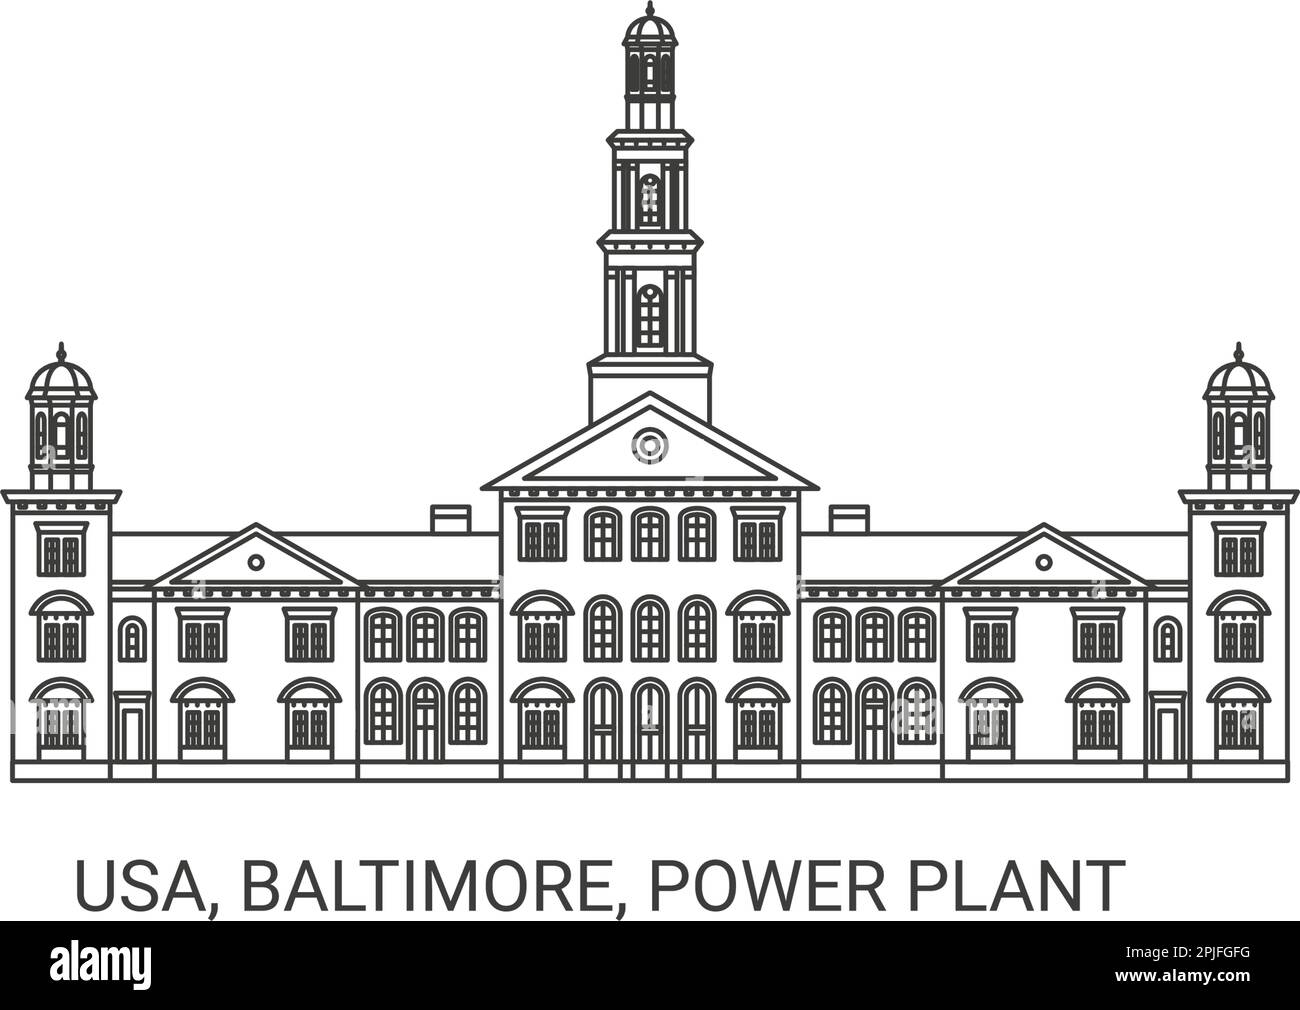 Usa, Baltimore, Power Plant travel landmark vector illustration Stock Vector